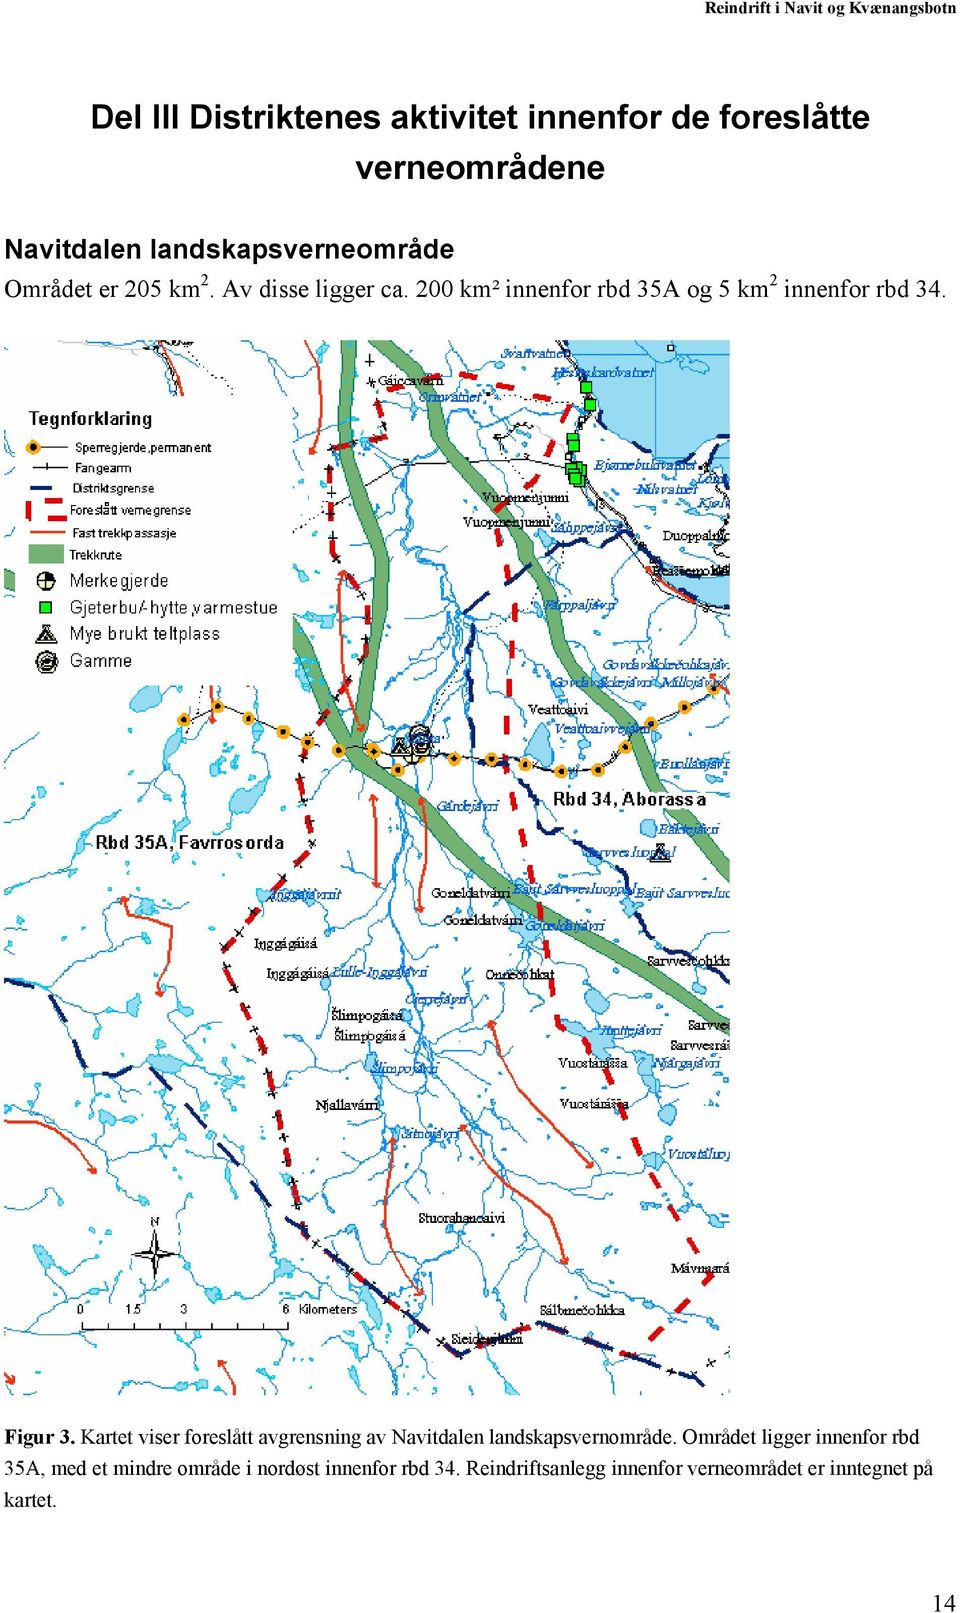 Kartet viser foreslått avgrensning av Navitdalen landskapsvernområde.